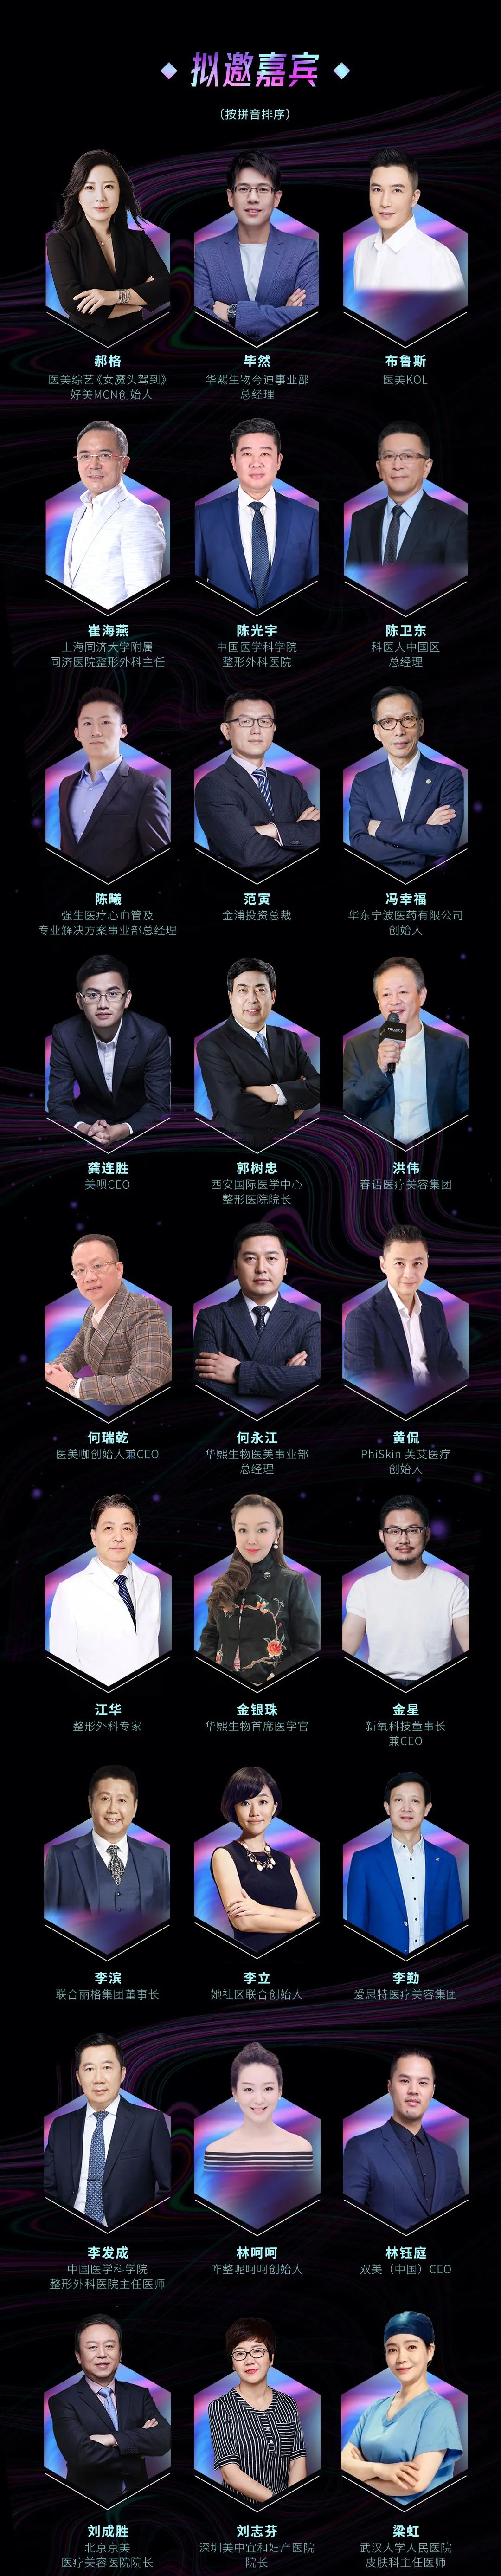 2021全球医美消费者星尚大会4月21日上海启幕1.jpeg